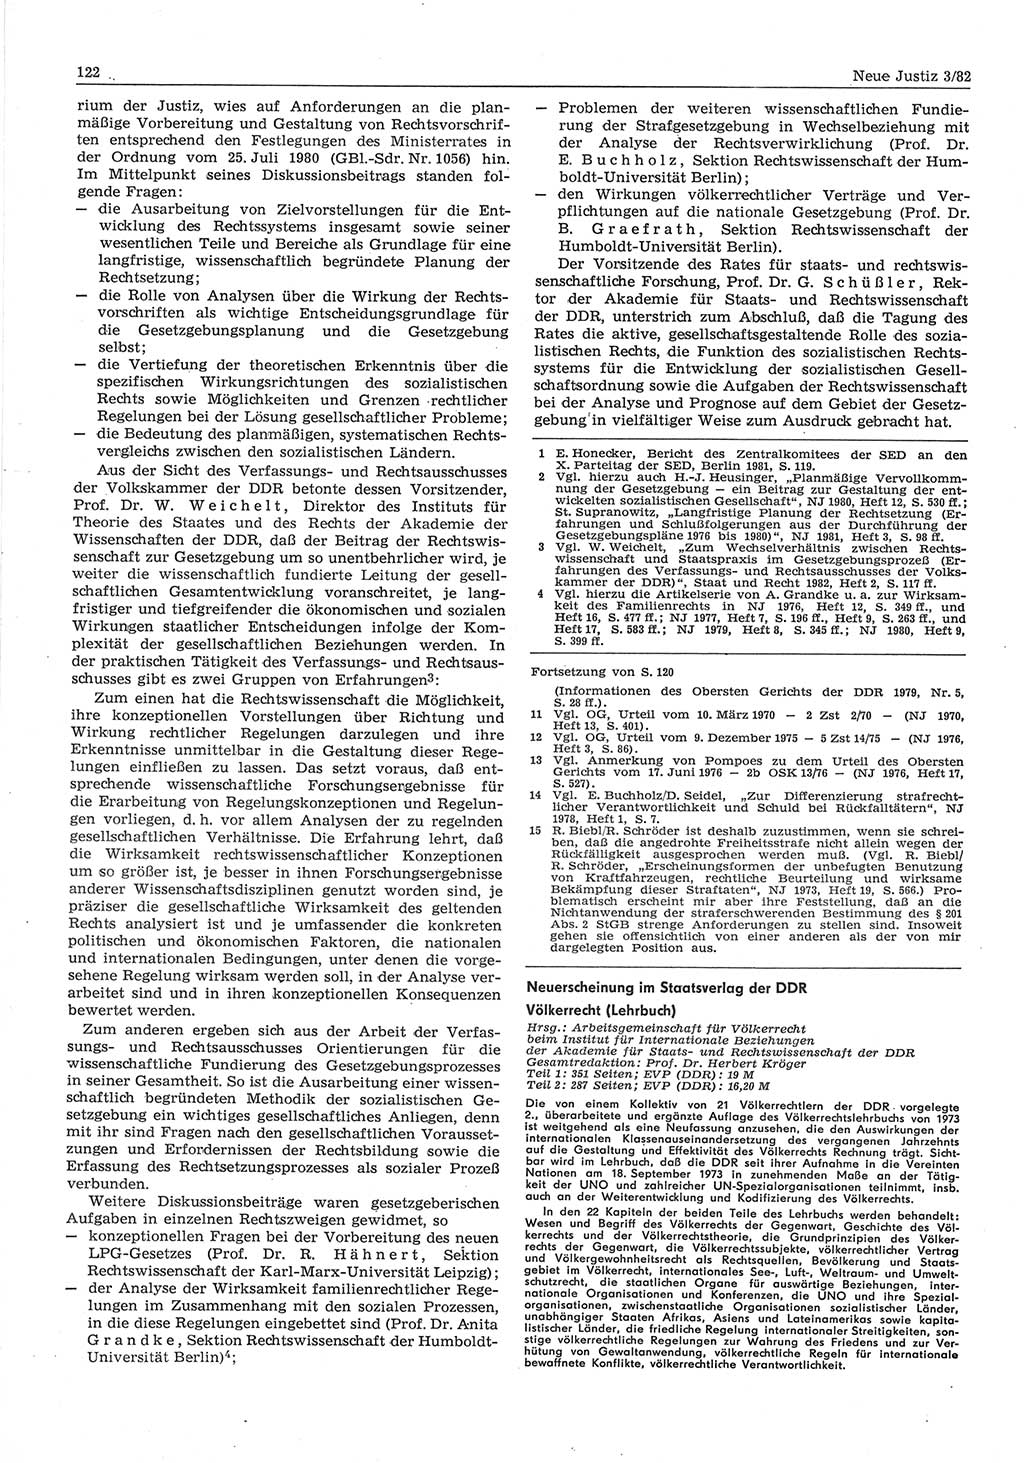 Neue Justiz (NJ), Zeitschrift für sozialistisches Recht und Gesetzlichkeit [Deutsche Demokratische Republik (DDR)], 36. Jahrgang 1982, Seite 122 (NJ DDR 1982, S. 122)